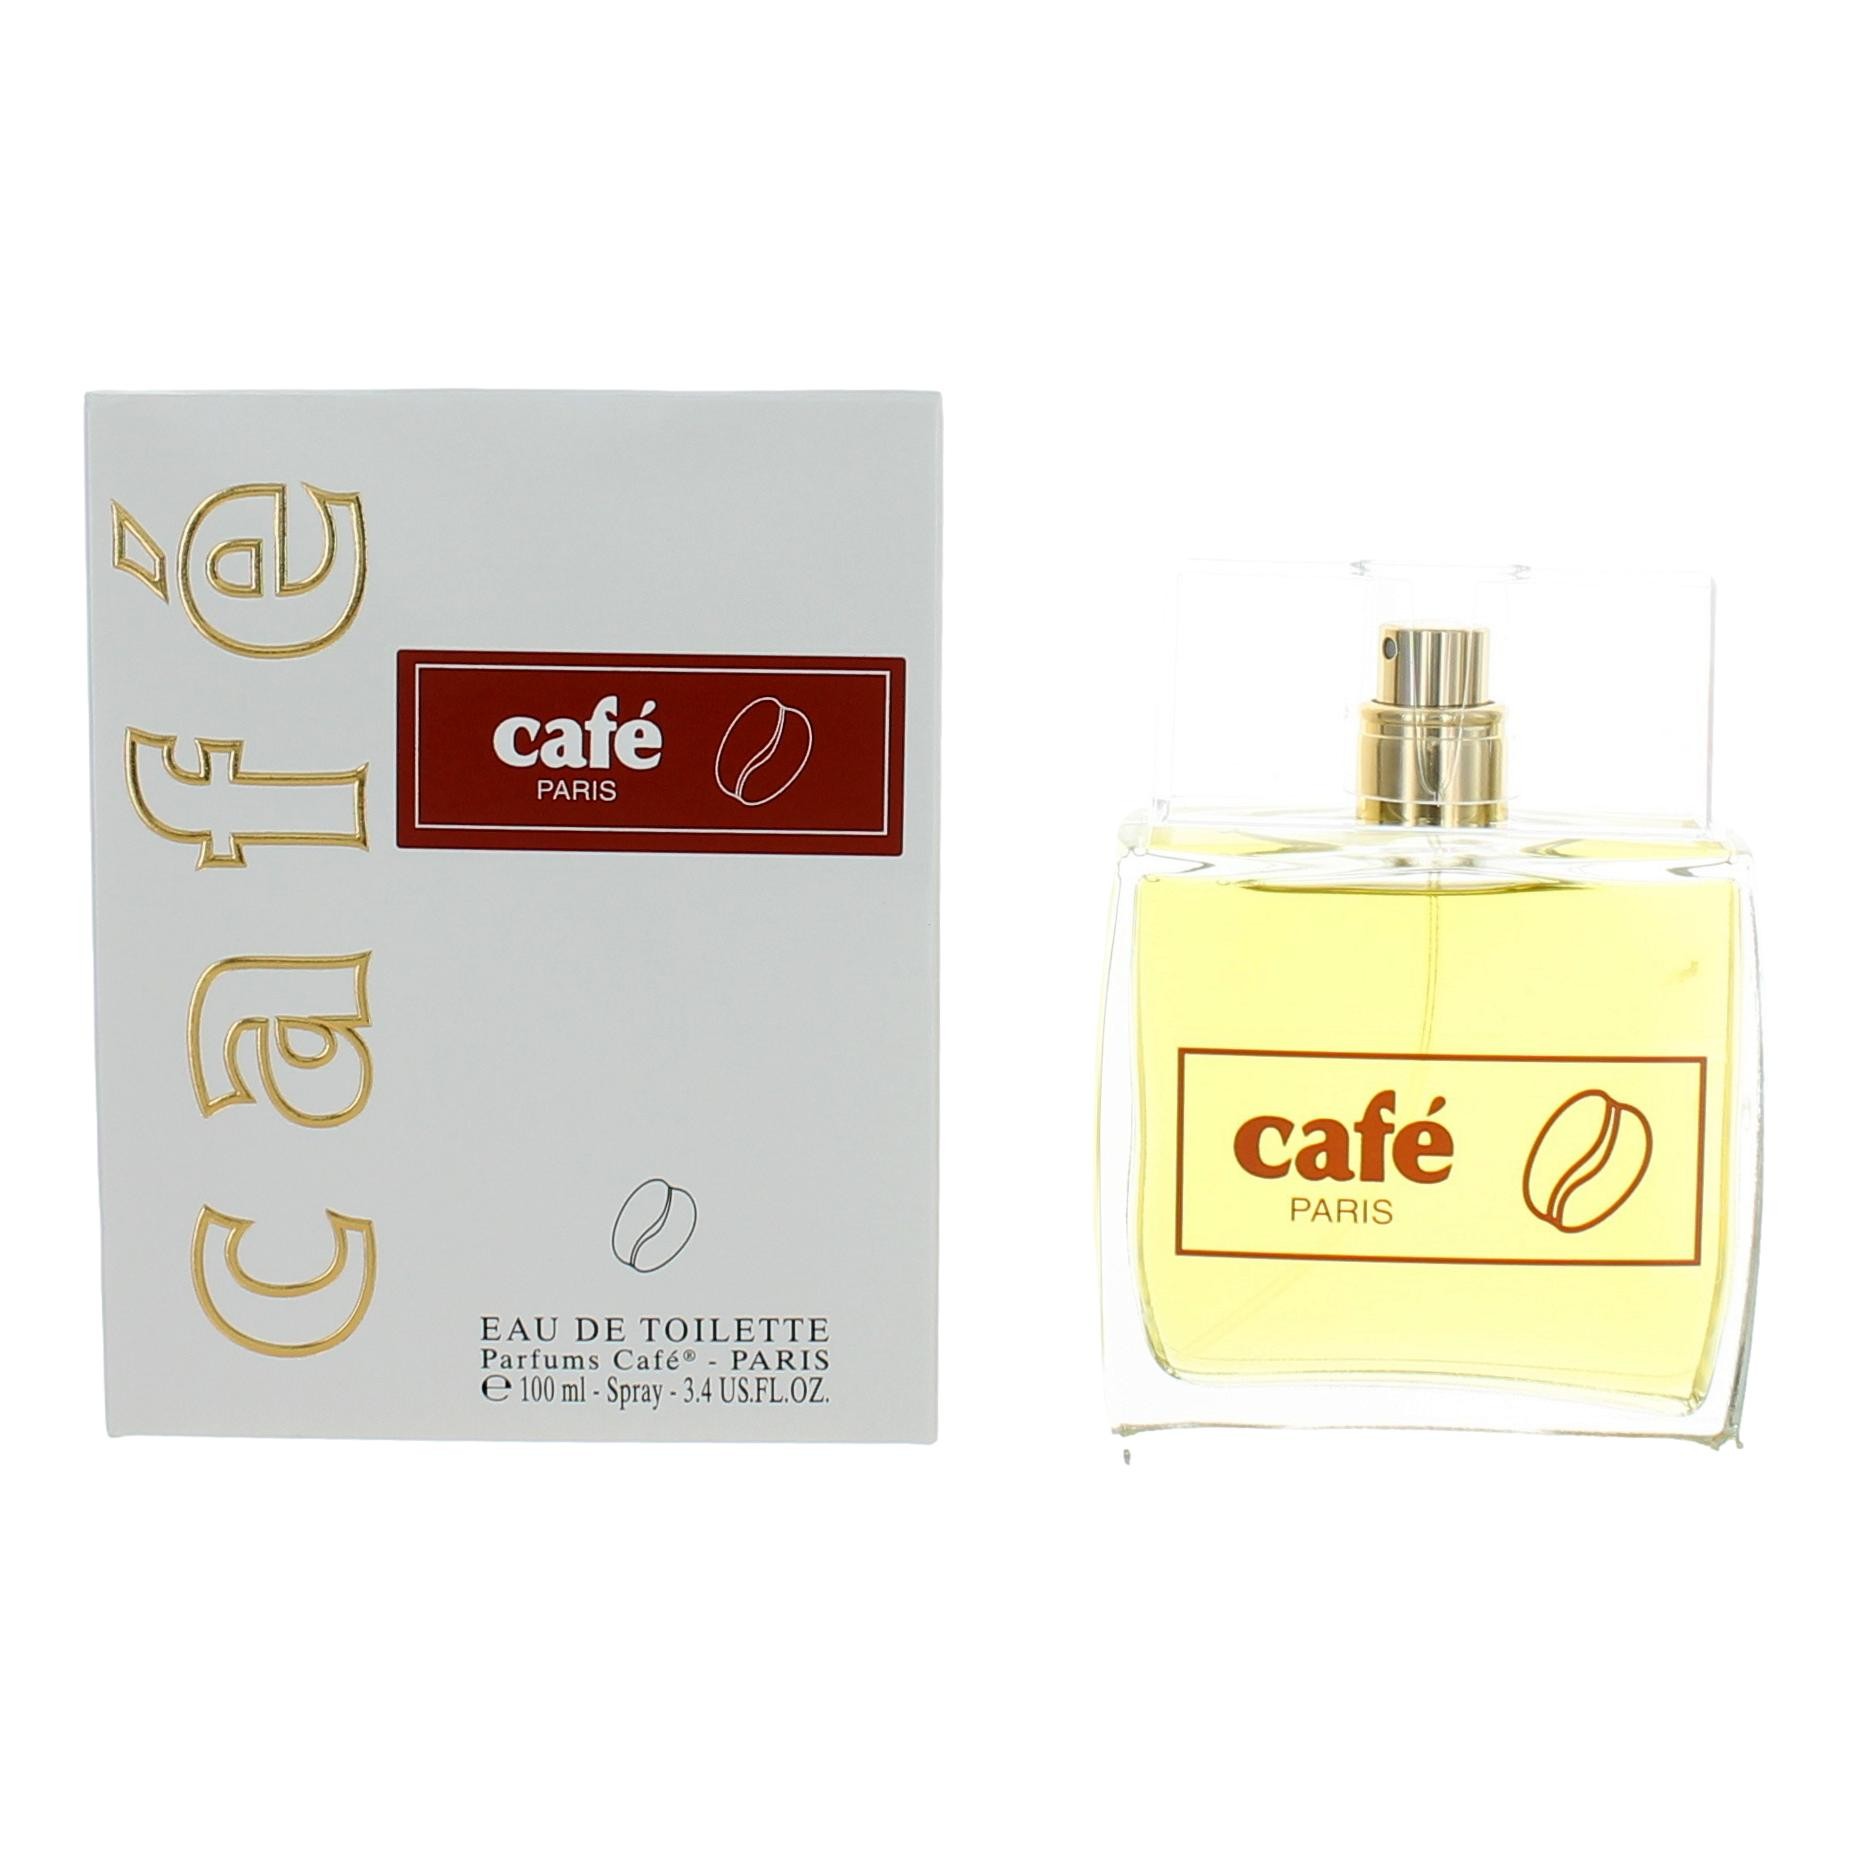 Cafe Paris by Cofinlux 3.4 oz Eau De Toilette Spray for Women